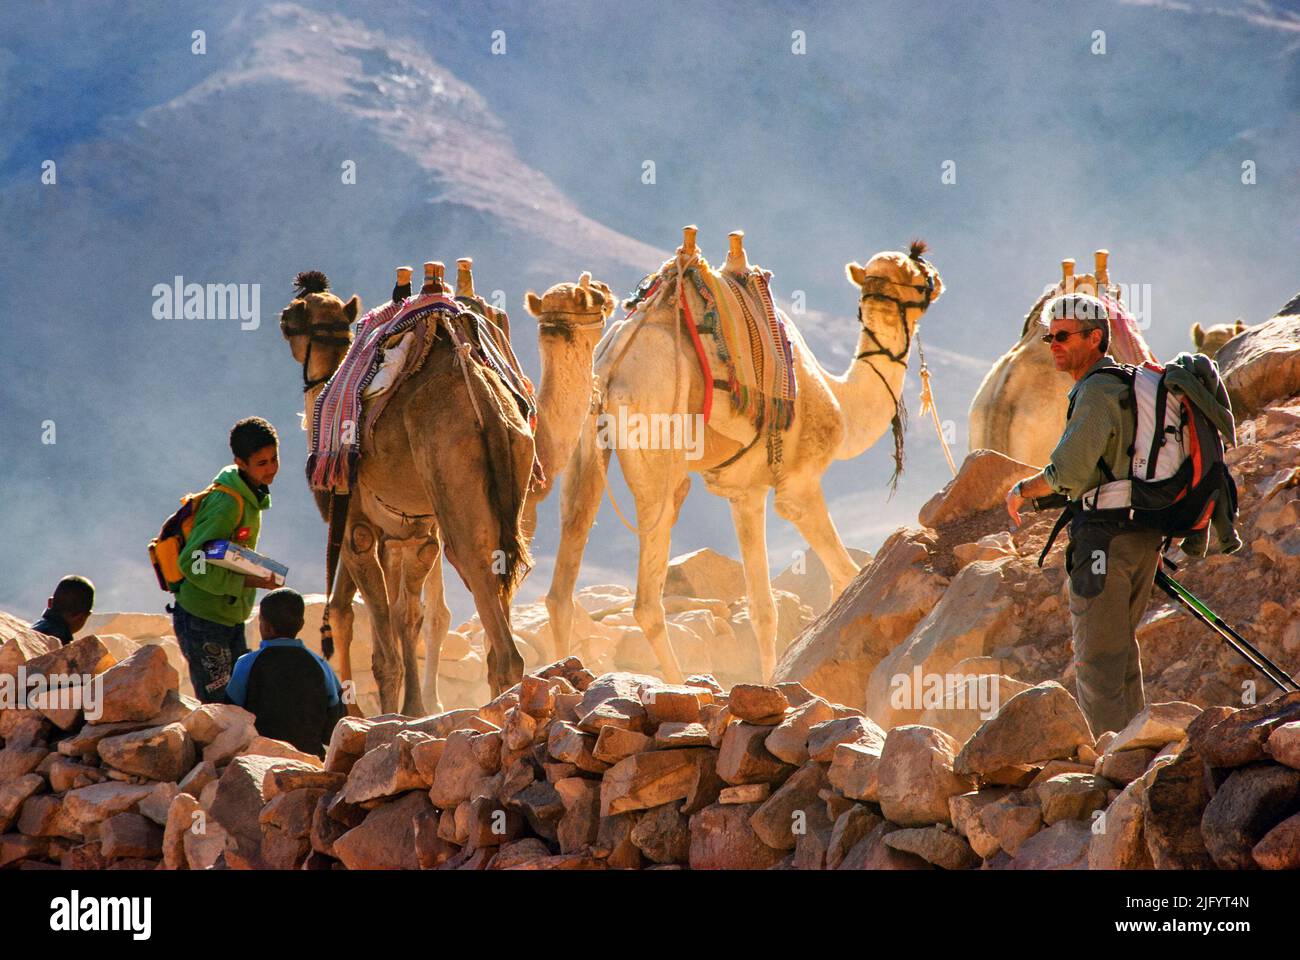 Turista, niños beduinos y camellos descendiendo el Monte Sinaí al amanecer - Península del Sinaí, Egipto Foto de stock